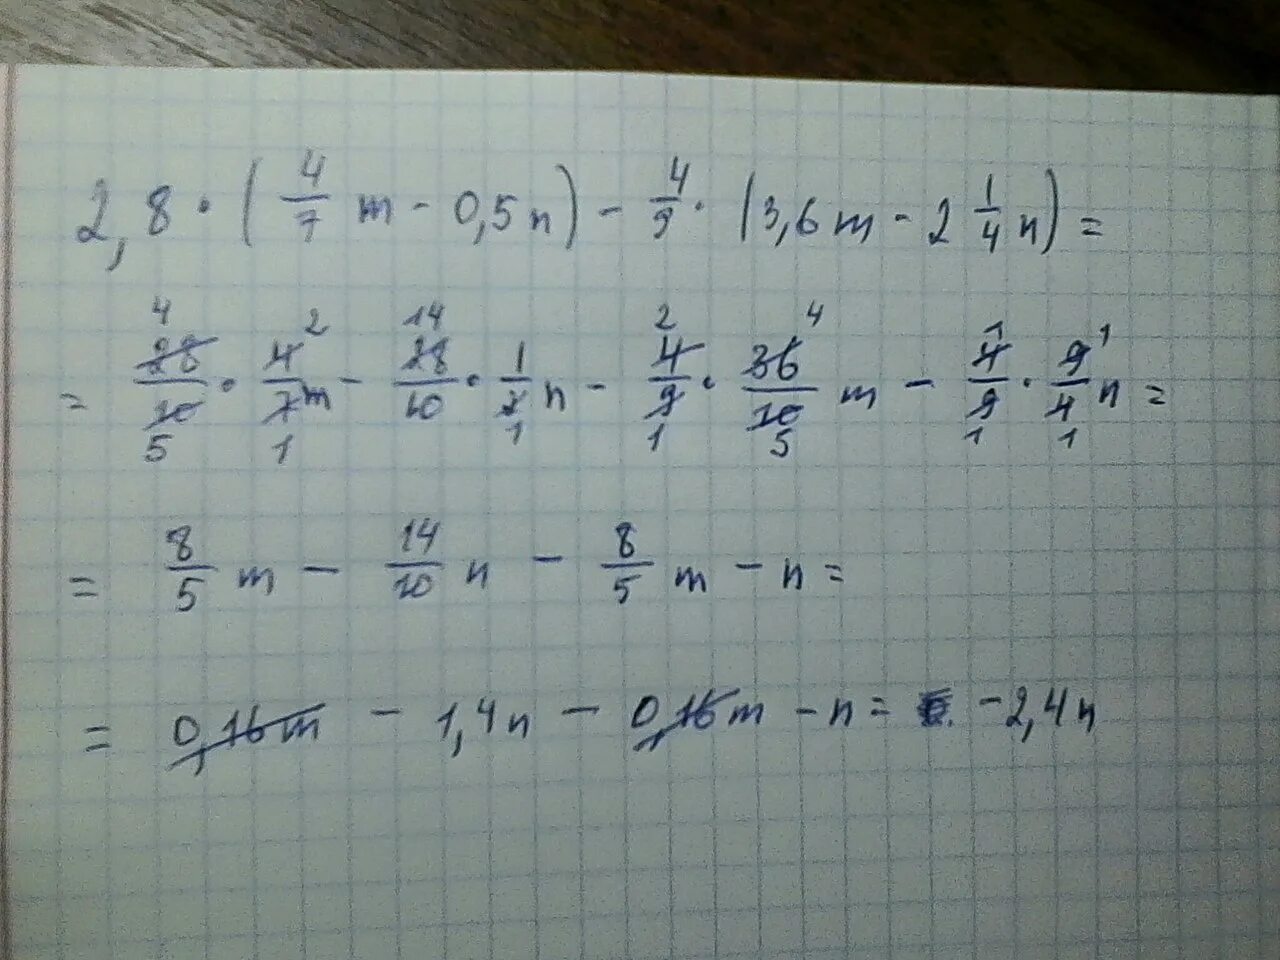 3 m 2n 5. (M^6)-^2/ M-^8=. 4(3m-n)-7(m-2n). 7m-7n. (M +7)2 +2(M+7)+1.